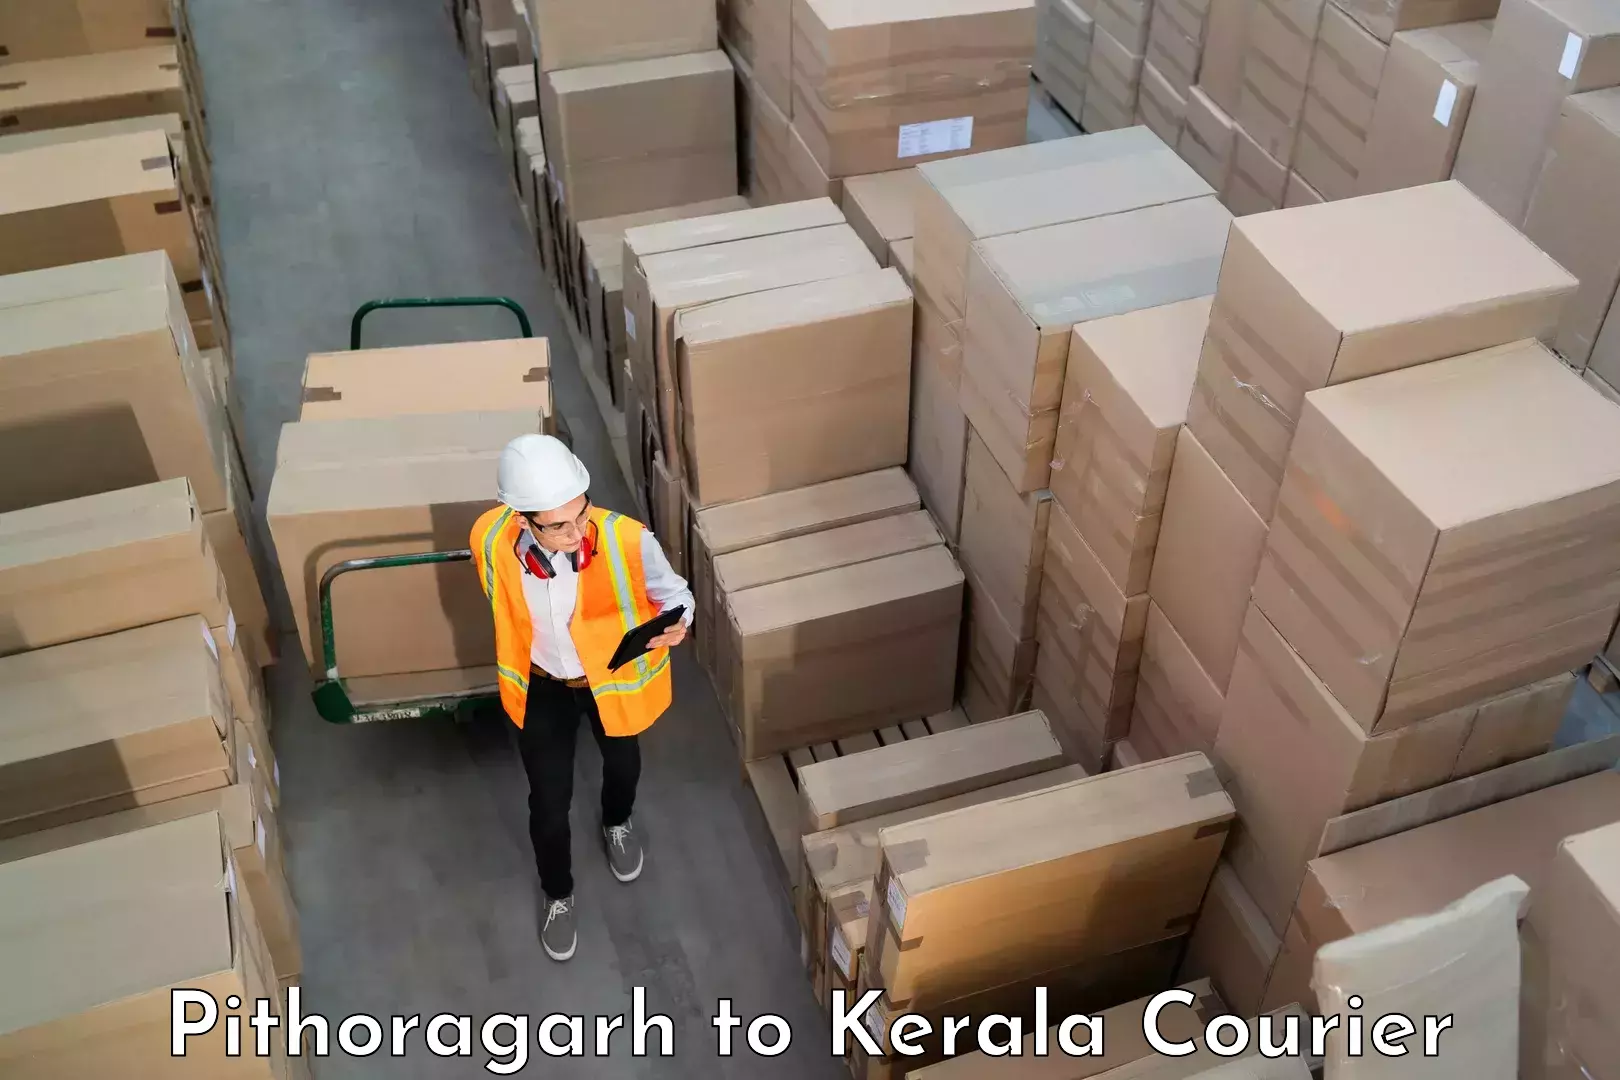 Baggage shipping experts Pithoragarh to Koothattukulam